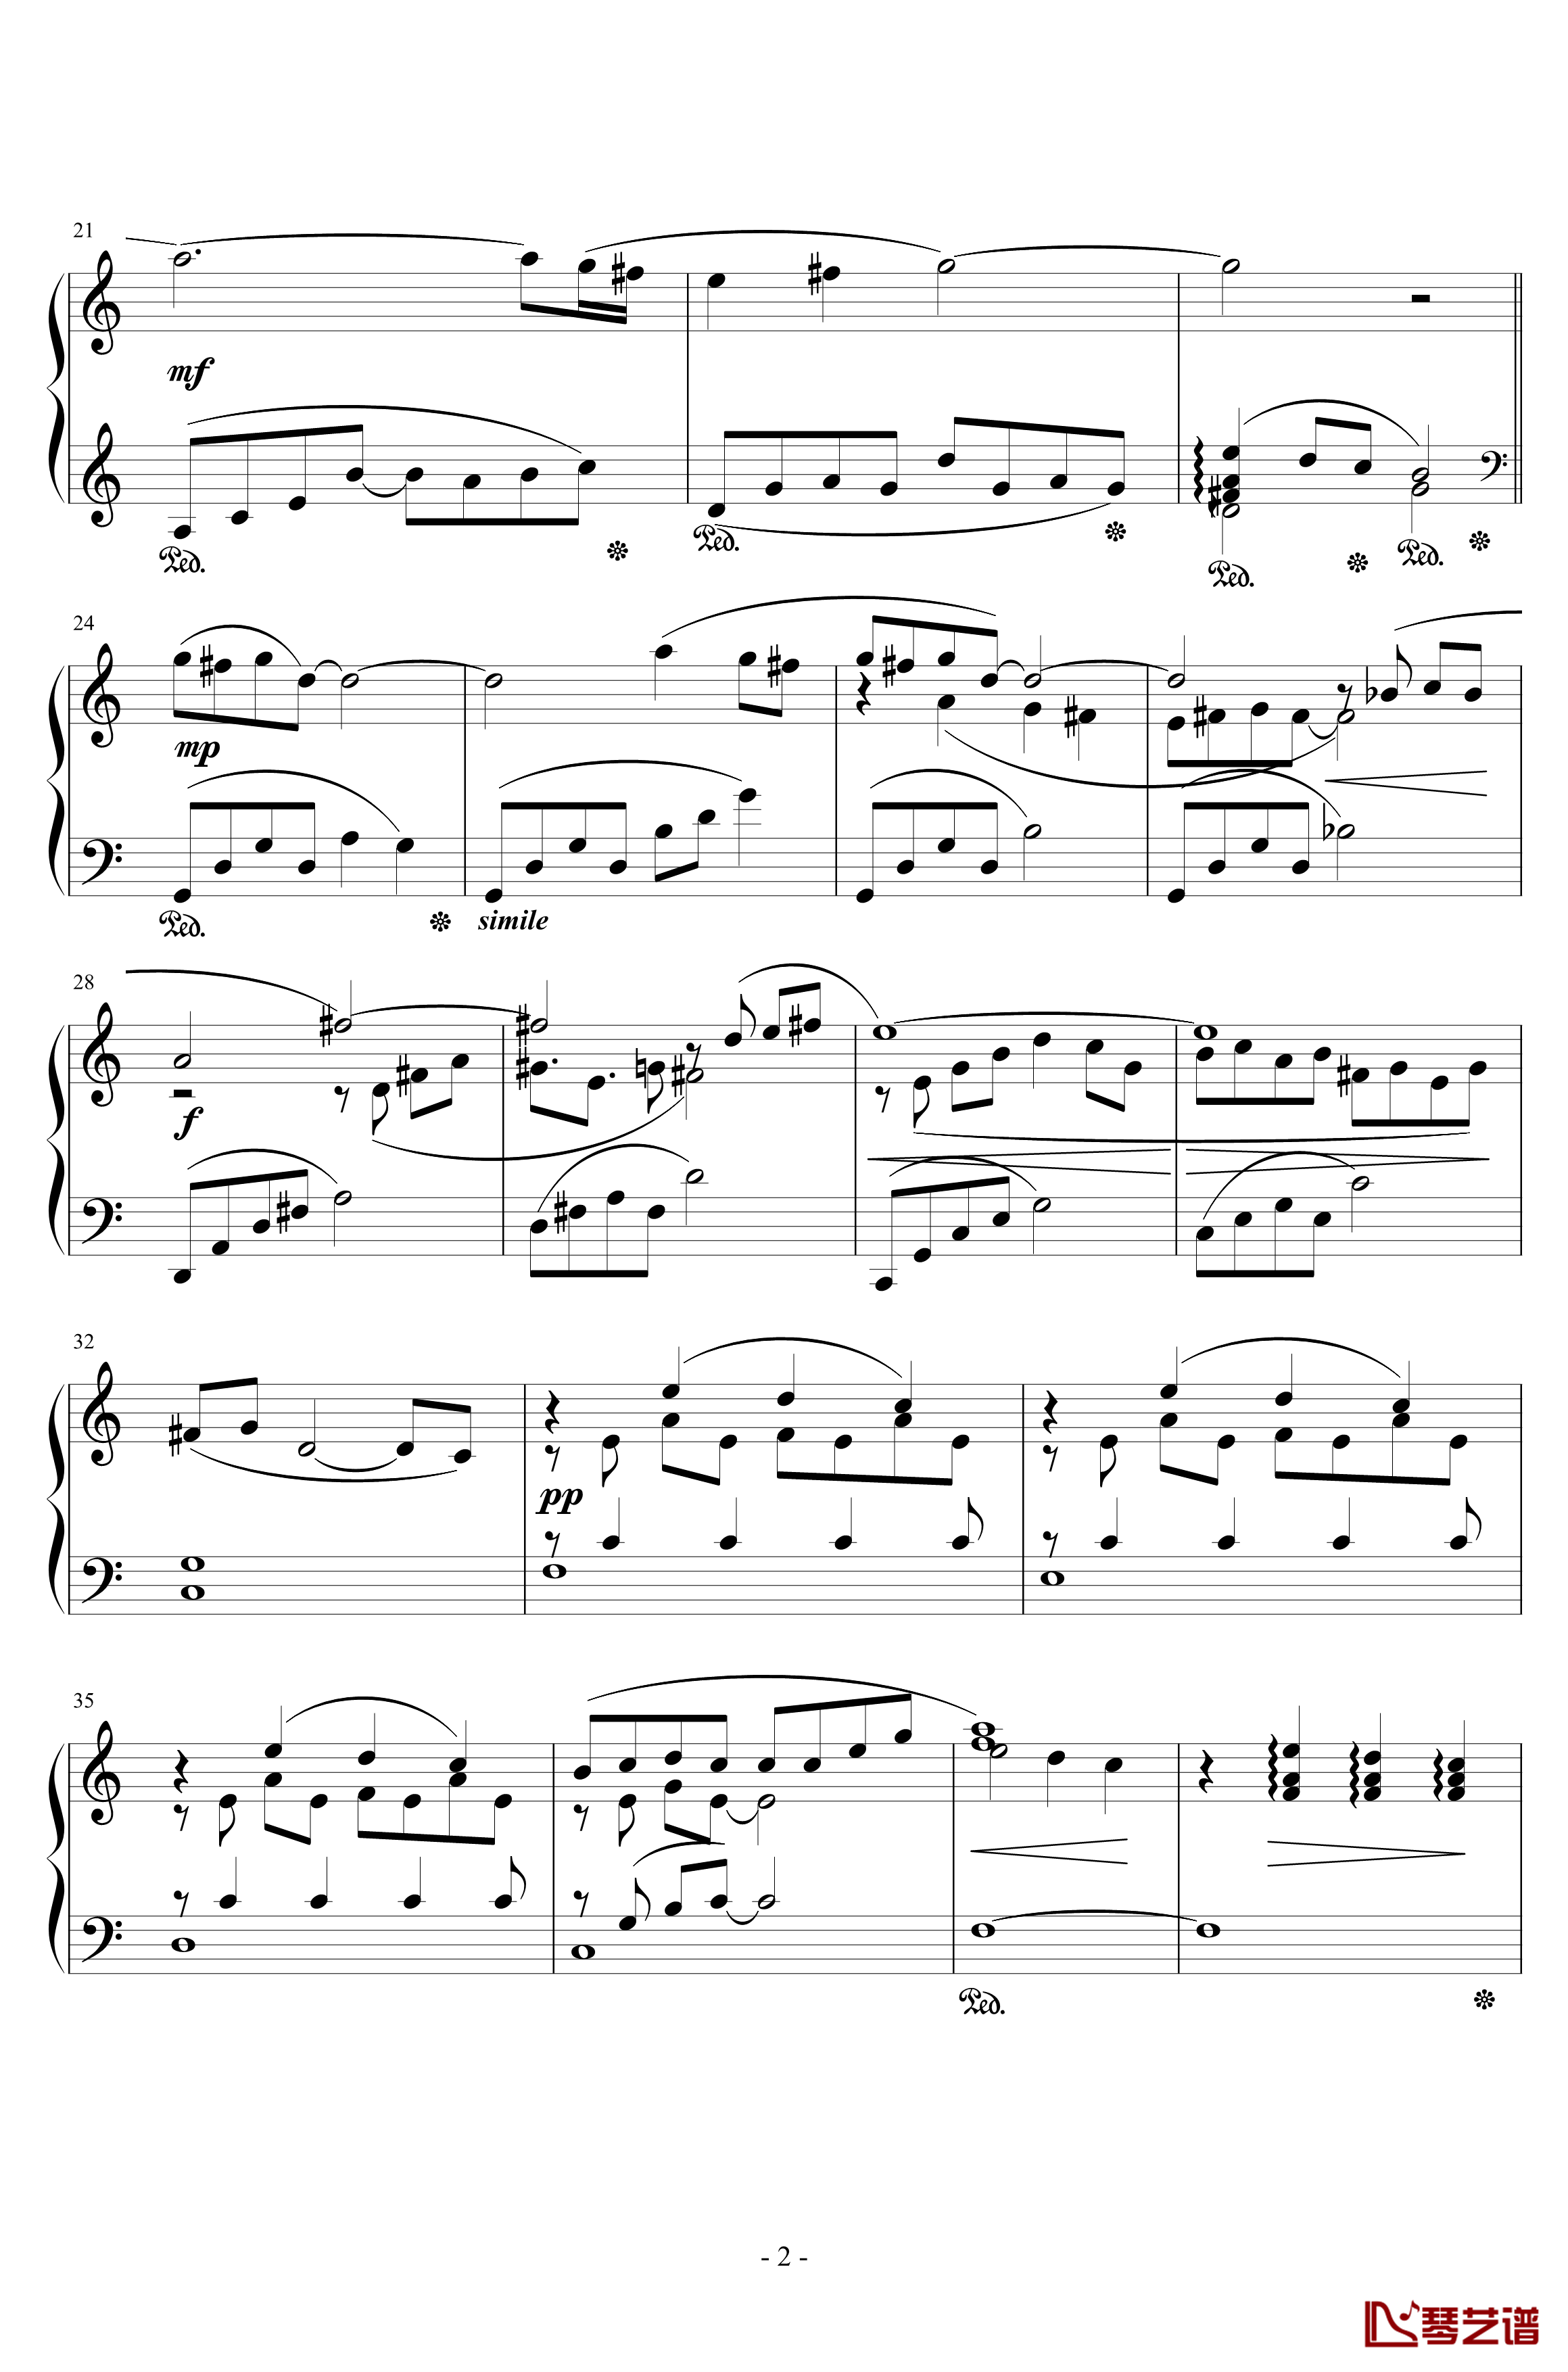 最终幻想8花园主题音乐钢琴谱-植松伸夫2